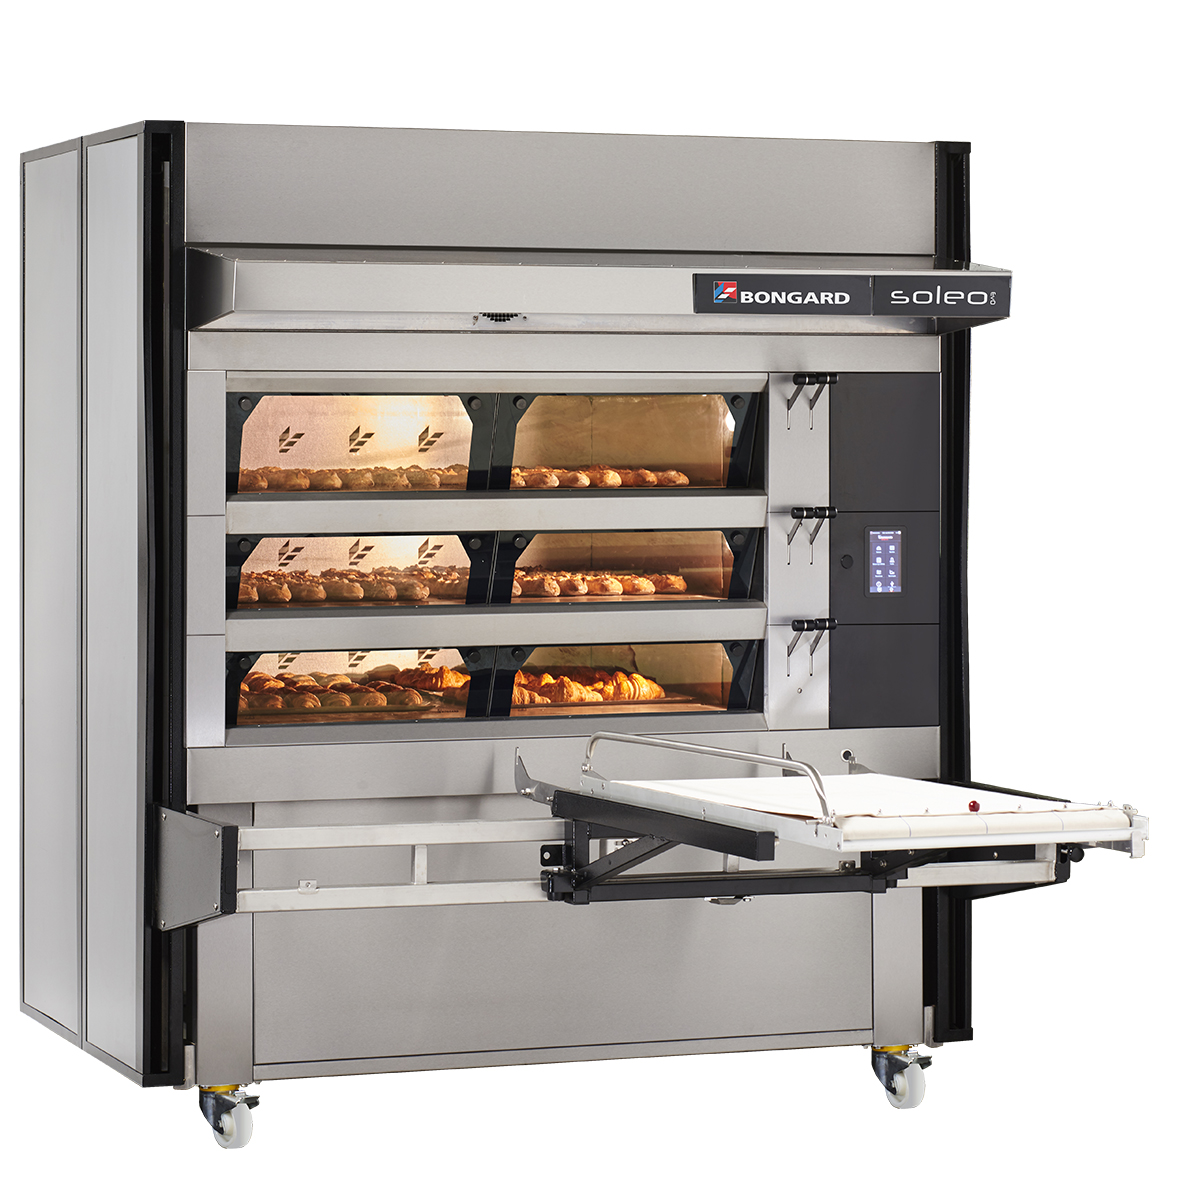 Bongard Soleo EvO elektrisch gestookt modulaire oven